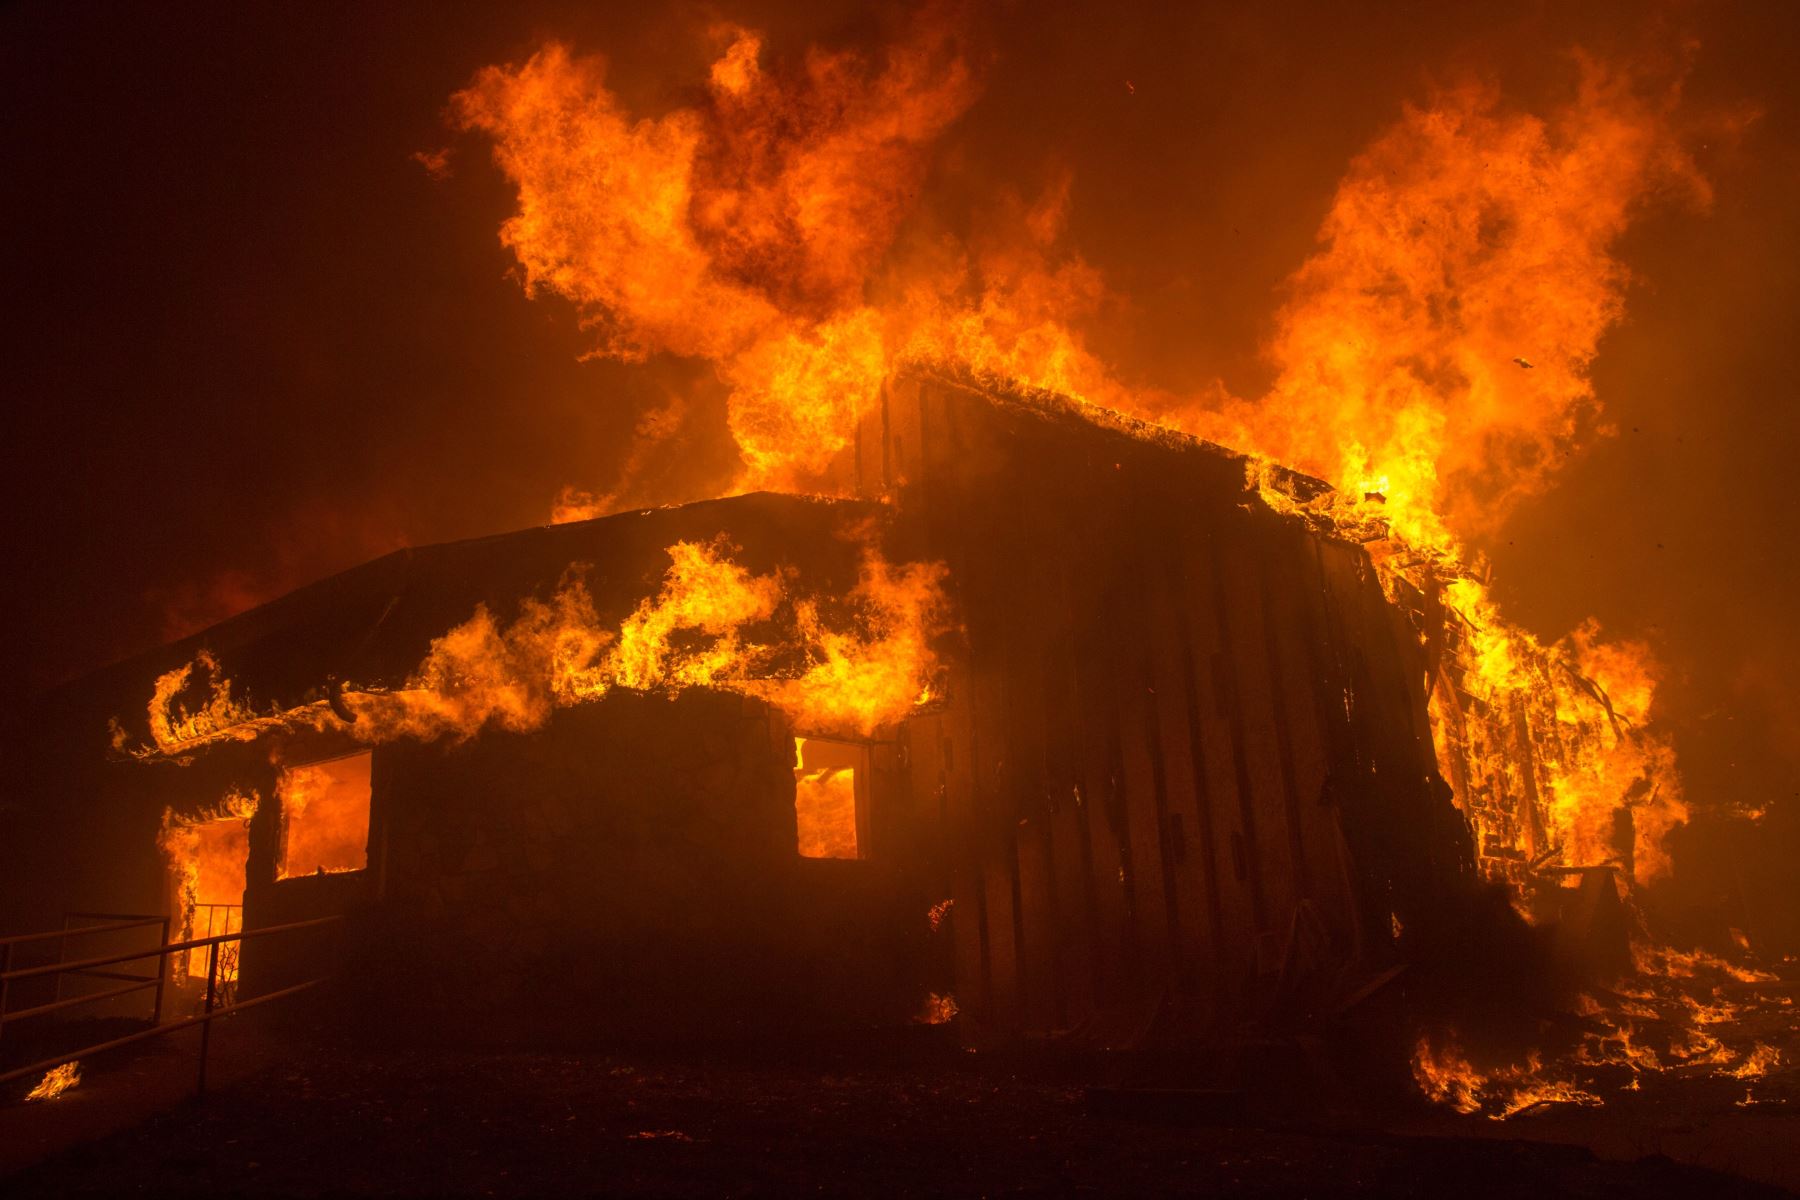 Vista del incendio hoy, jueves 8 de noviembre de 2018, en el condado de Butte, California (EE. UU.). Se ordenó a las comunidades cercanas a Pulga, Paraíso y Concurrencia que evacuar la zona.EFE